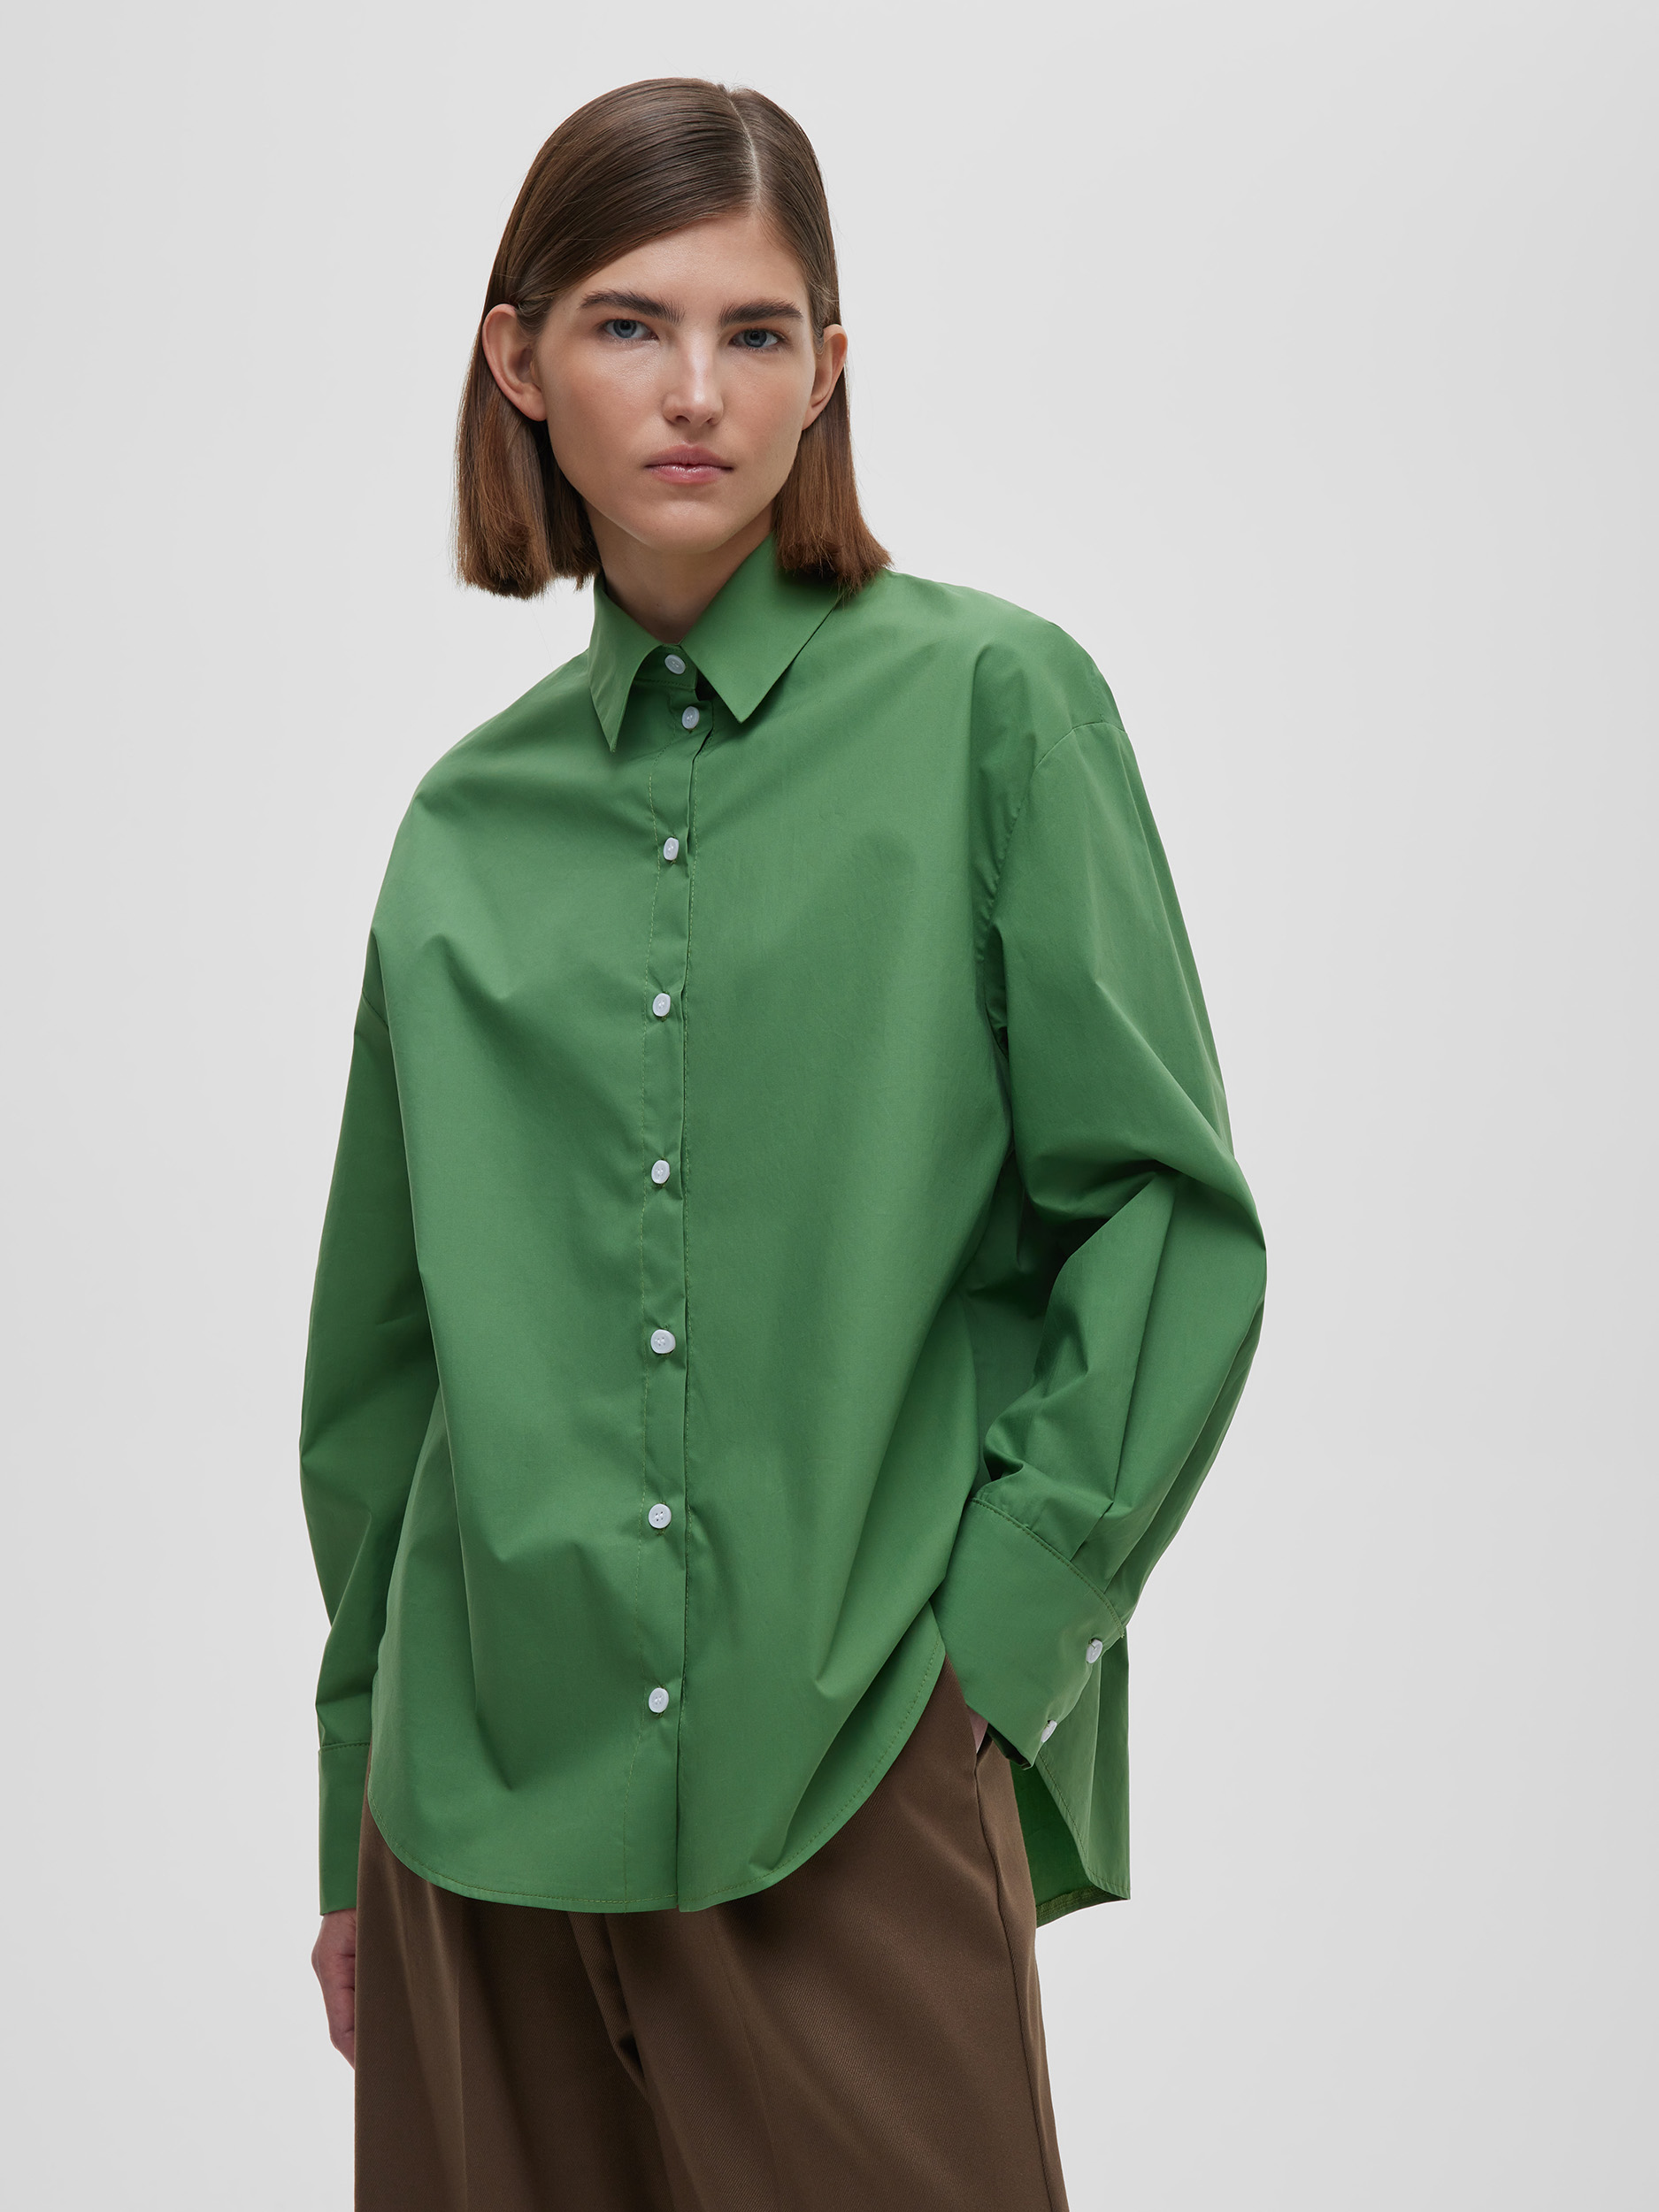 Рубашка женская свободная из хлопка, цвет – зеленый фото